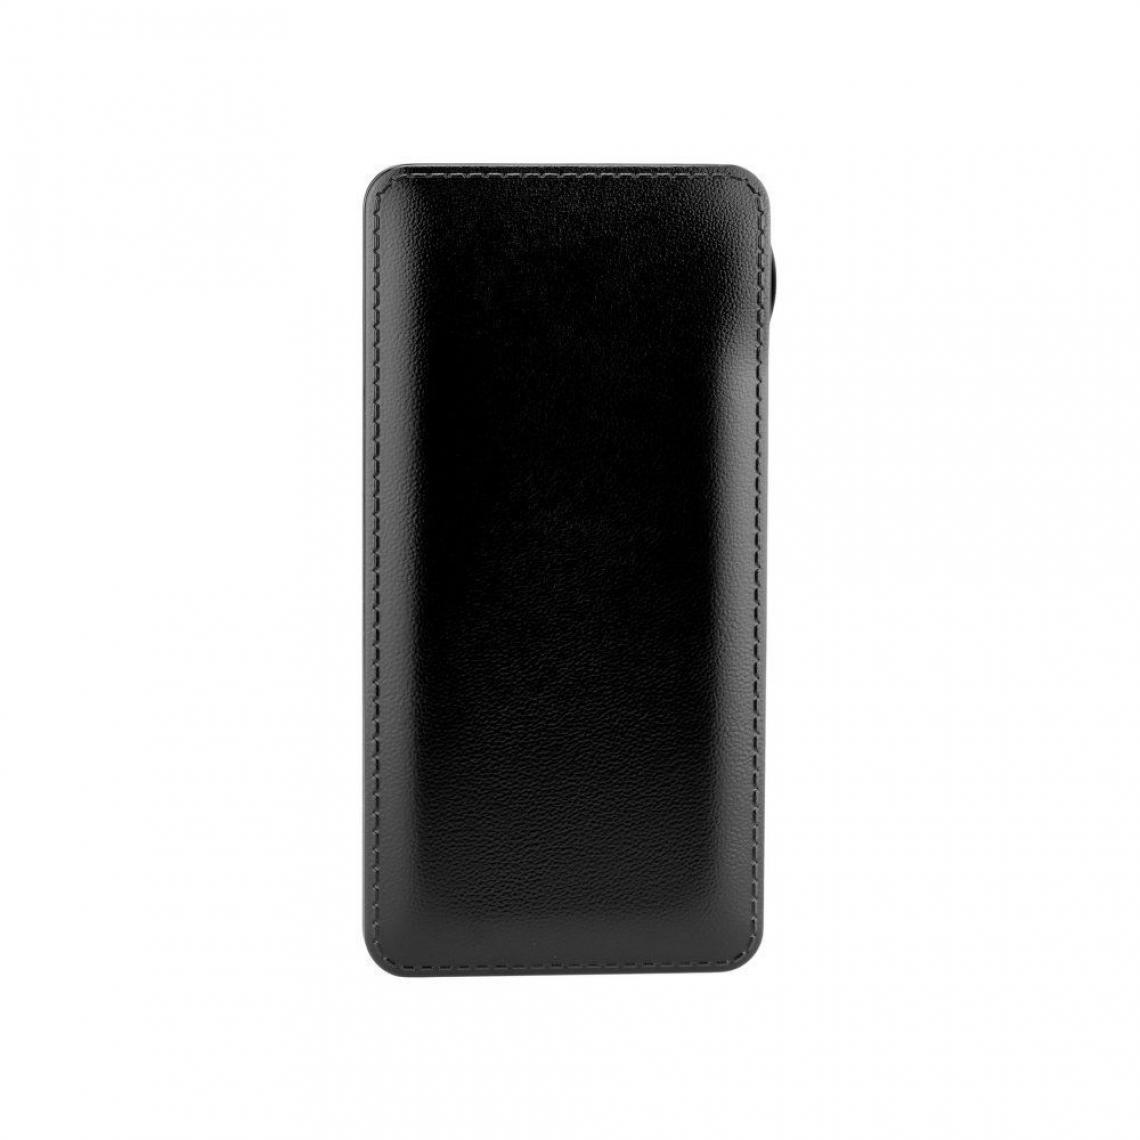 Ozzzo - Chargeur batterie externe 30000 mAh powerbank ozzzo noir pour Logicom Tab 105 - Autres accessoires smartphone